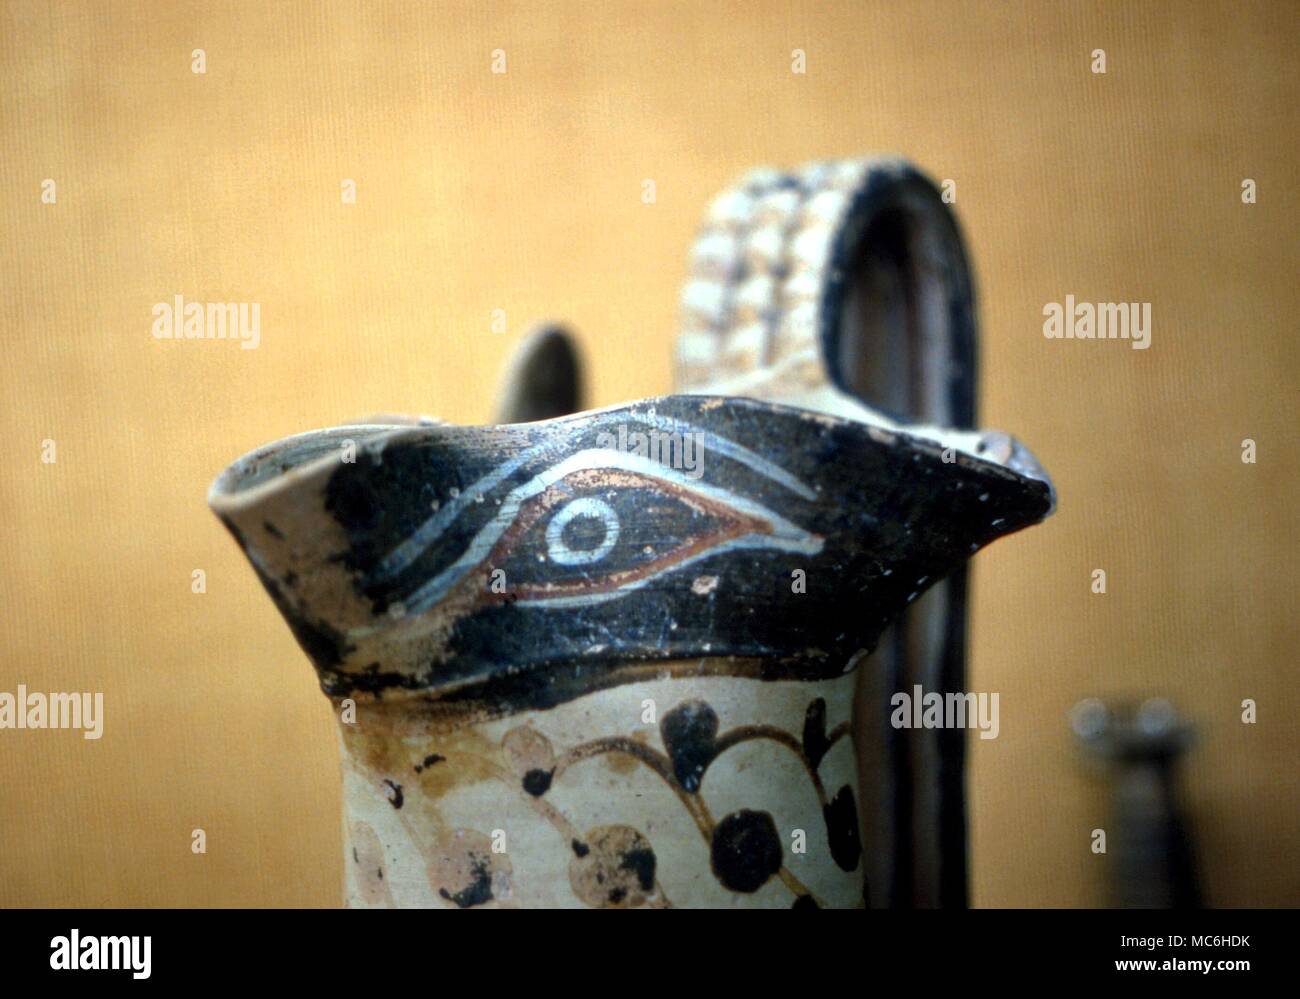 Amulette - Schützende Auge auf Trinkgefäß, entworfene zum Schutz vor Gift gewährleisten. Griechisch, vielleicht des 4. Jahrhunderts, aber traditionelles Design Stockfoto